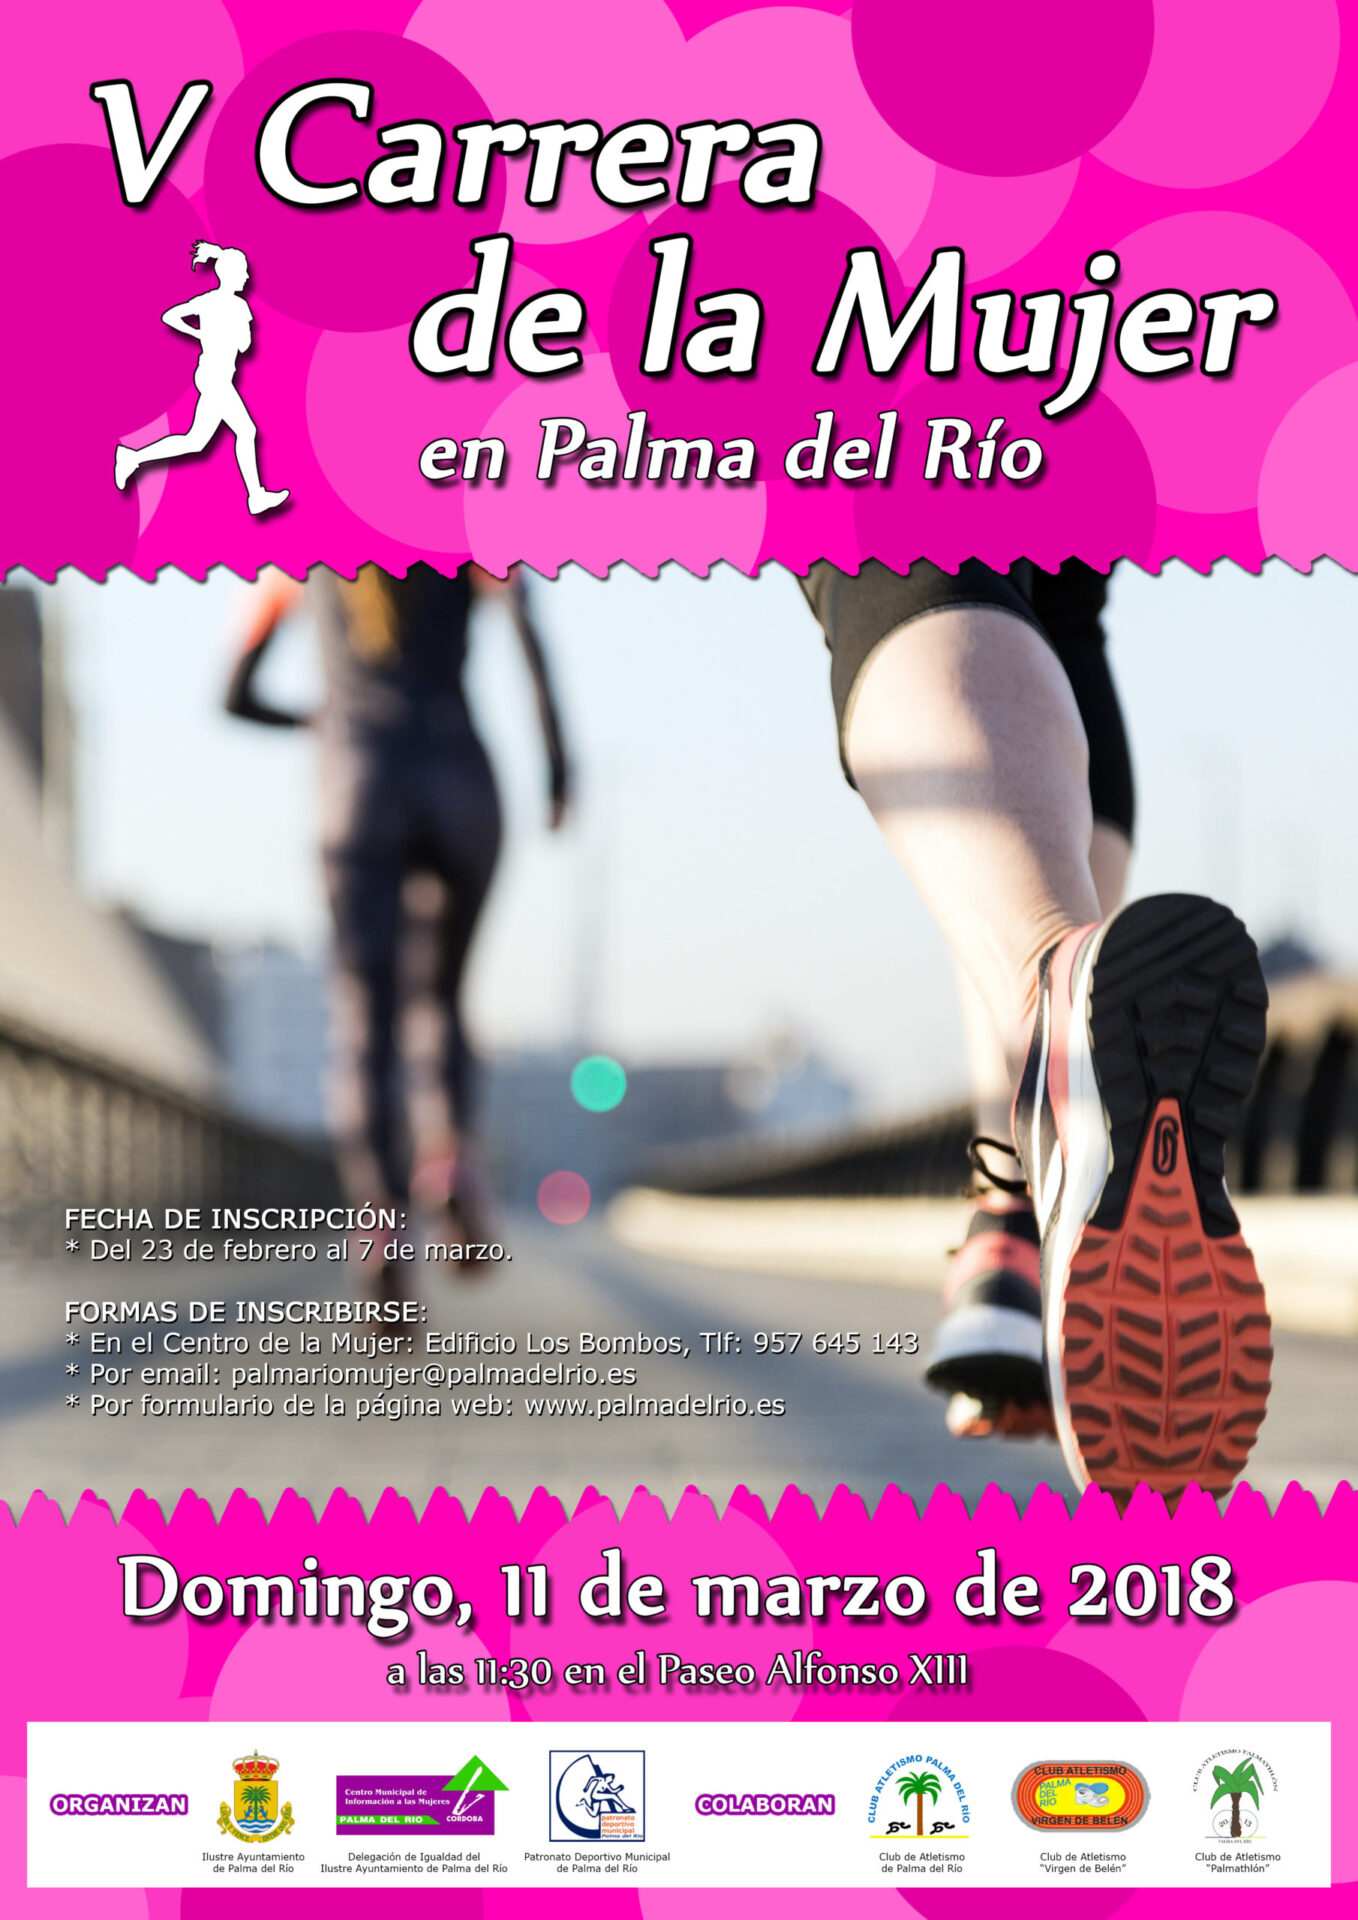 La V Carrera de la Mujer en Palma del Río se celebrará el domingo 11 marzo 2018 1